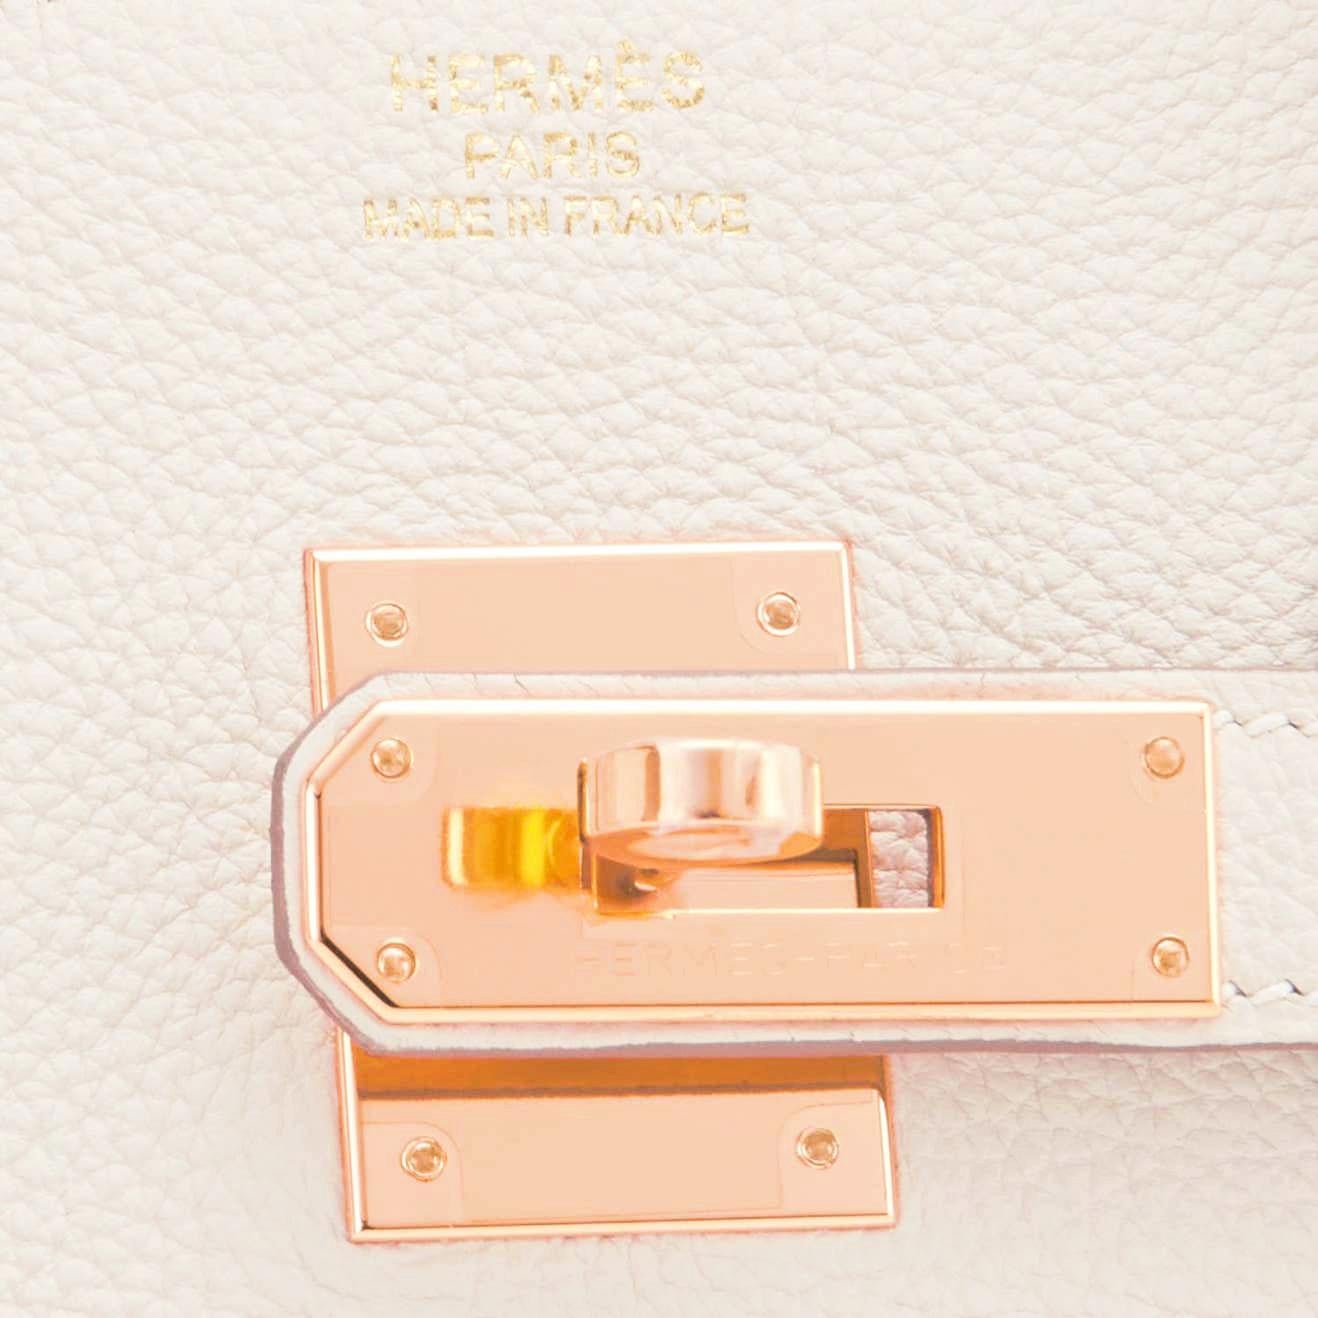 Hermes Birkin 30 Craie Rose Gold Hardware Togo Chalk Off White Bag Y Stamp, 2020 3